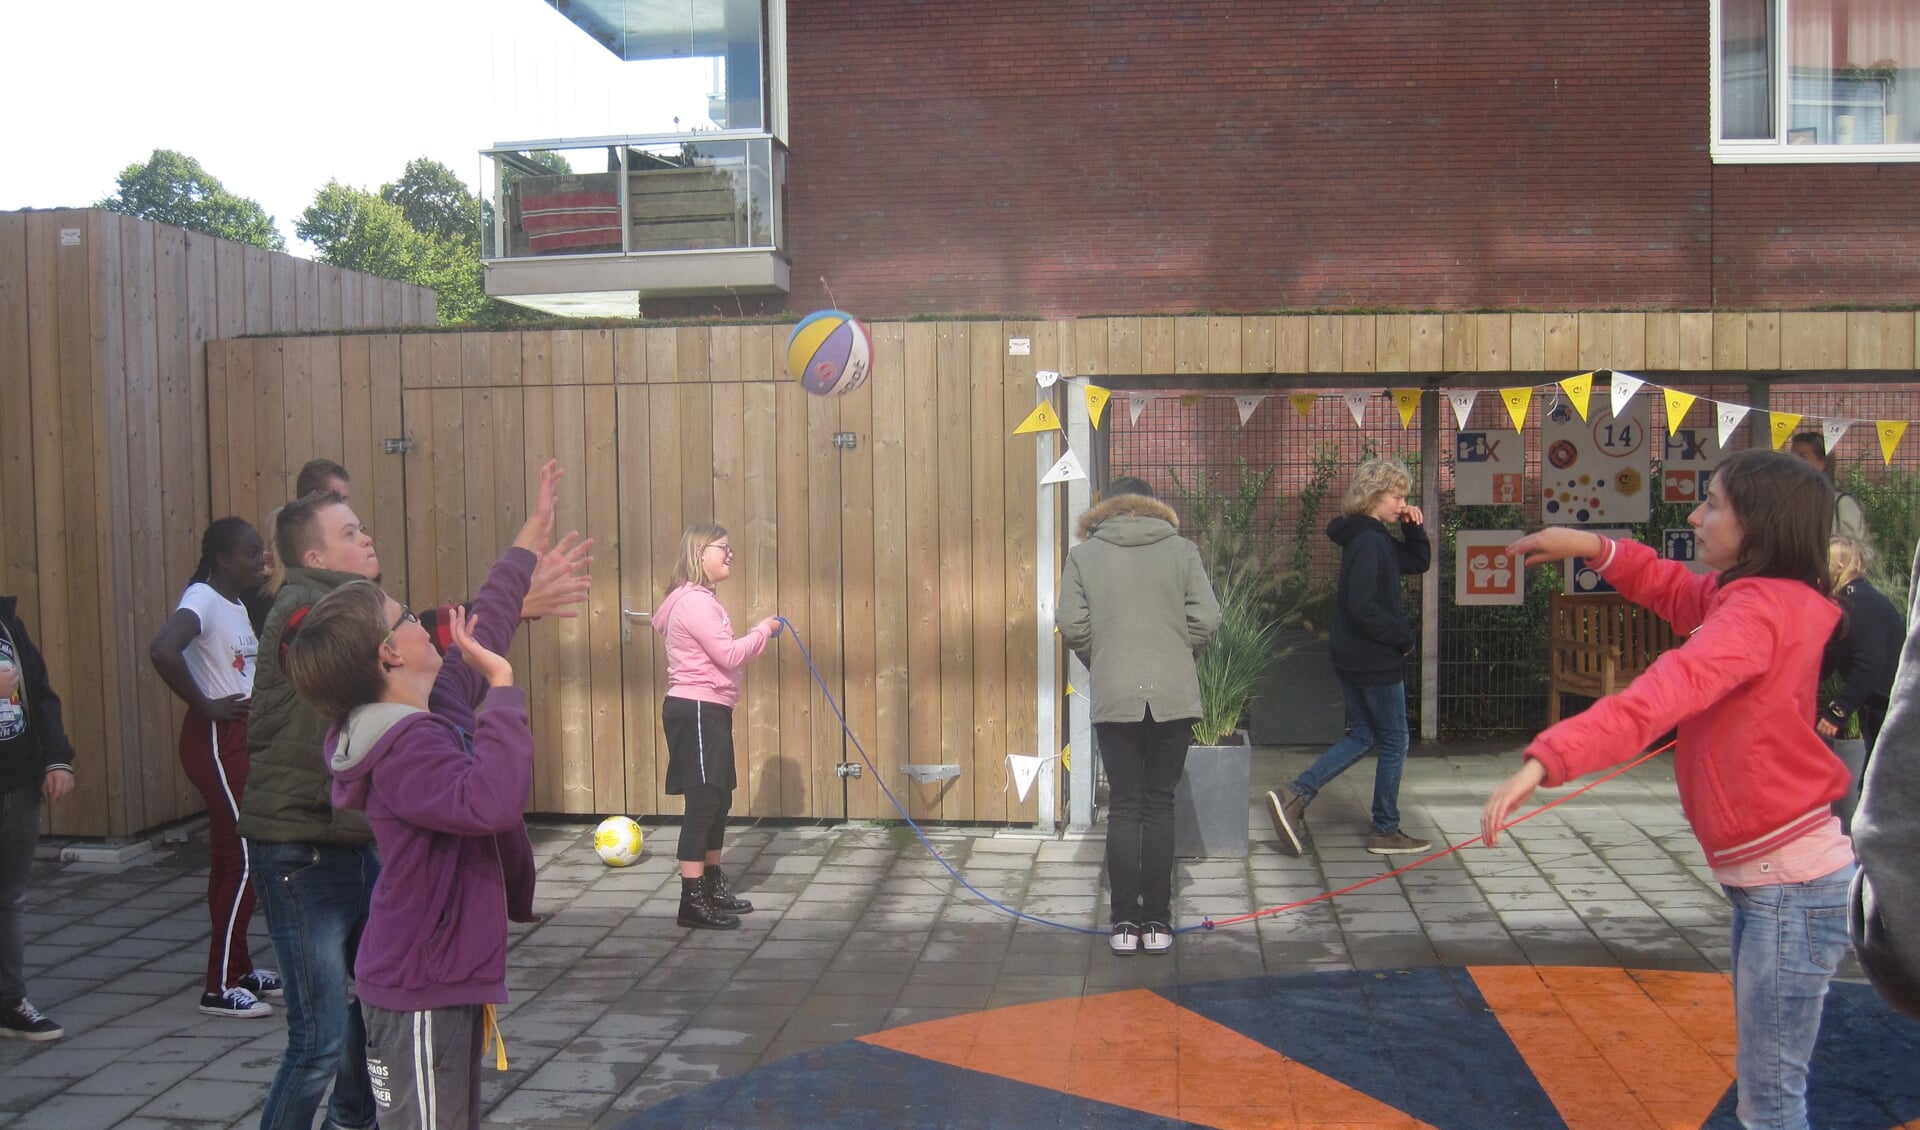 De leerlingen van school Bleyburgh mochten na de opening op het nieuwe schoolplein spelen